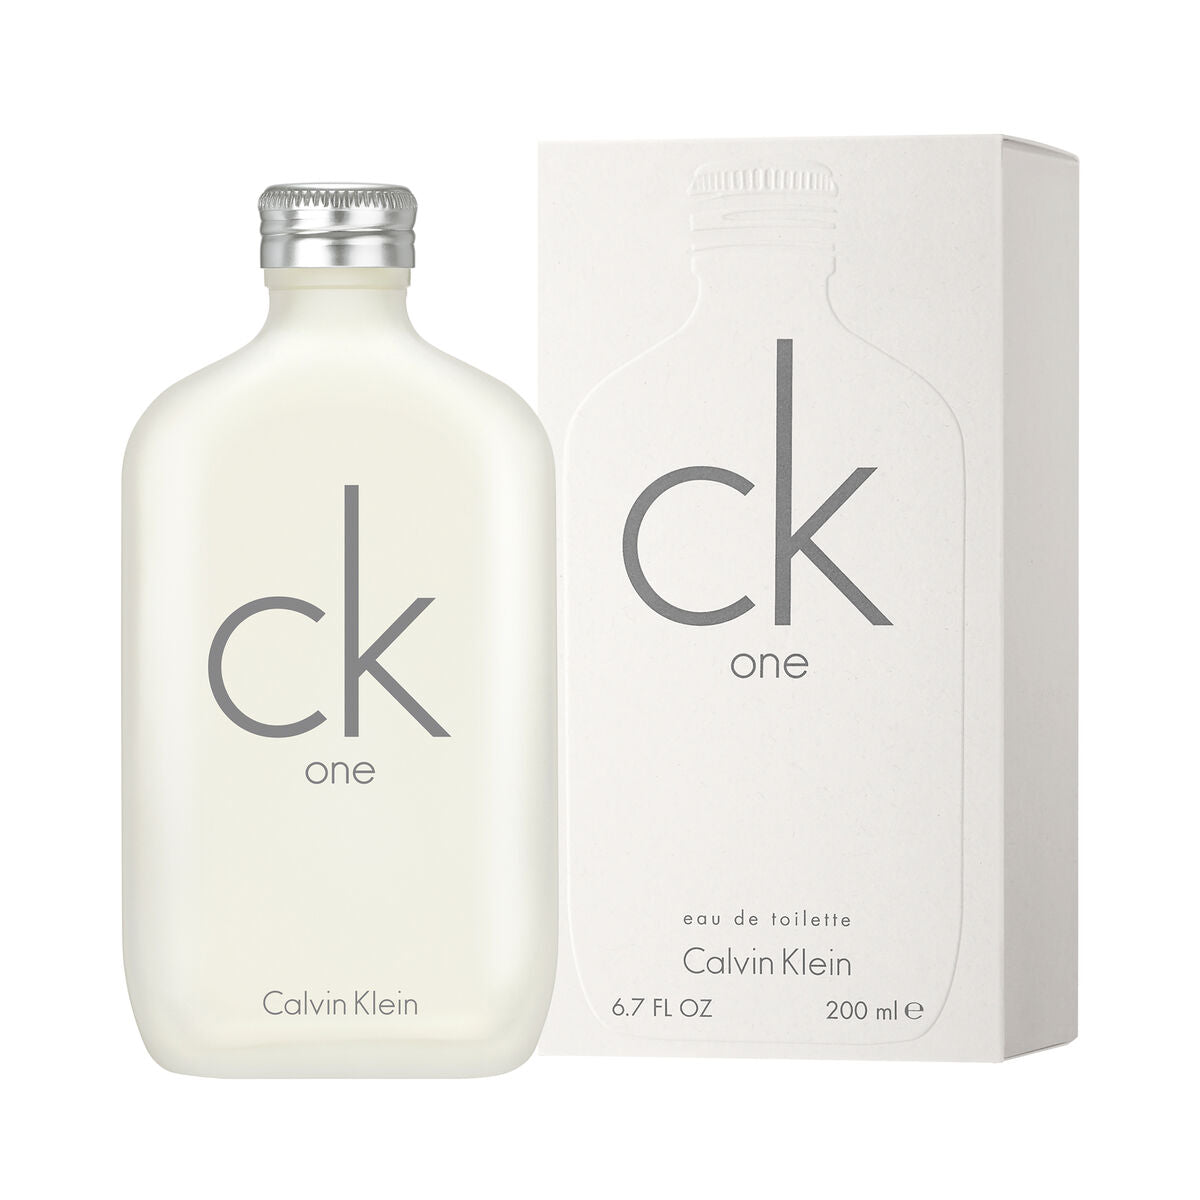 Perfume Unisex Calvin Klein EDT 200 ml ck one (Reacondicionado A)